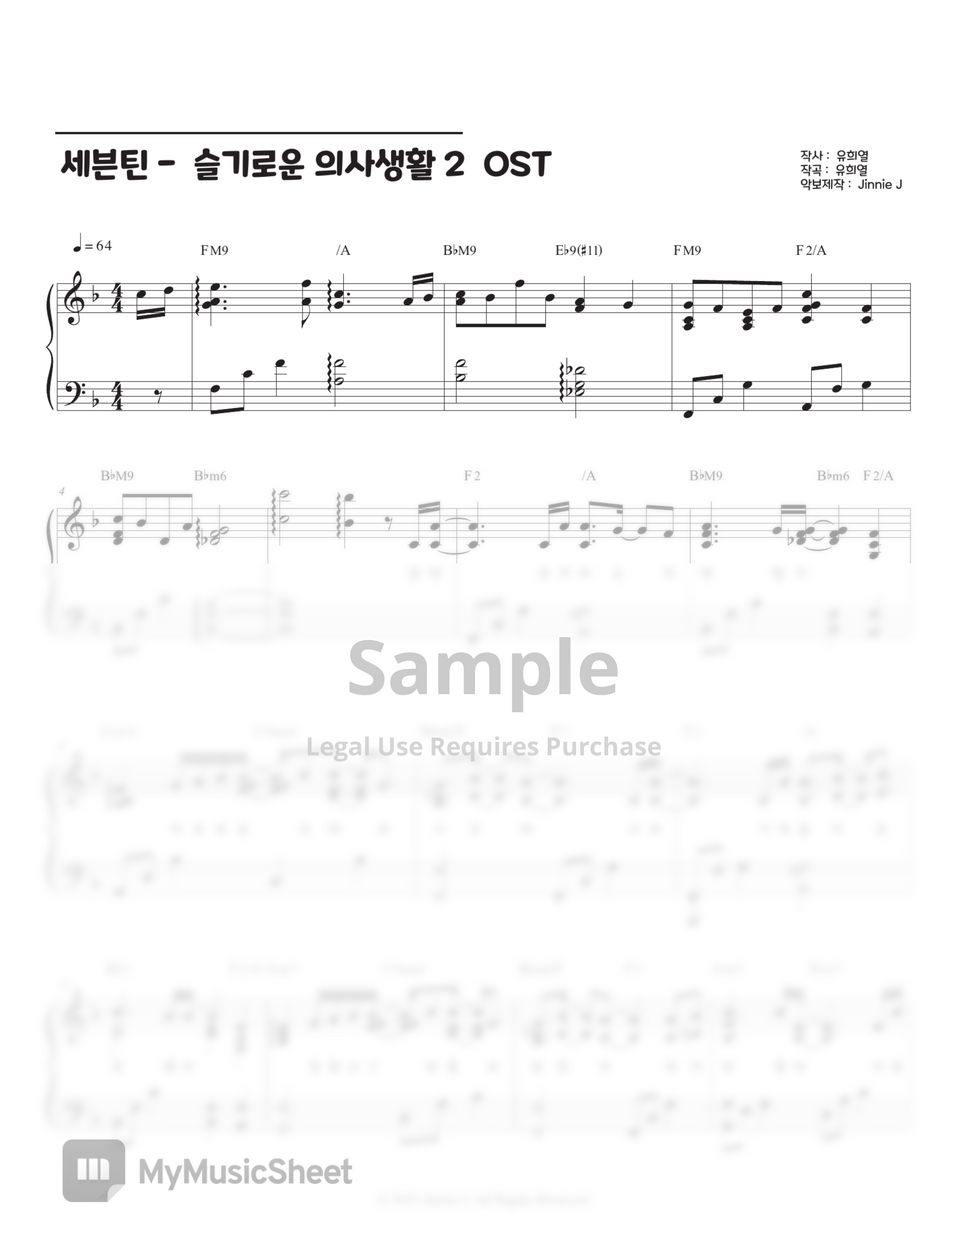 SEVENTEEN (세븐틴) - 여전히 아름다운지 (Is It Still Beautiful) (Hospital Playlist 2 OST) by Jinnie J